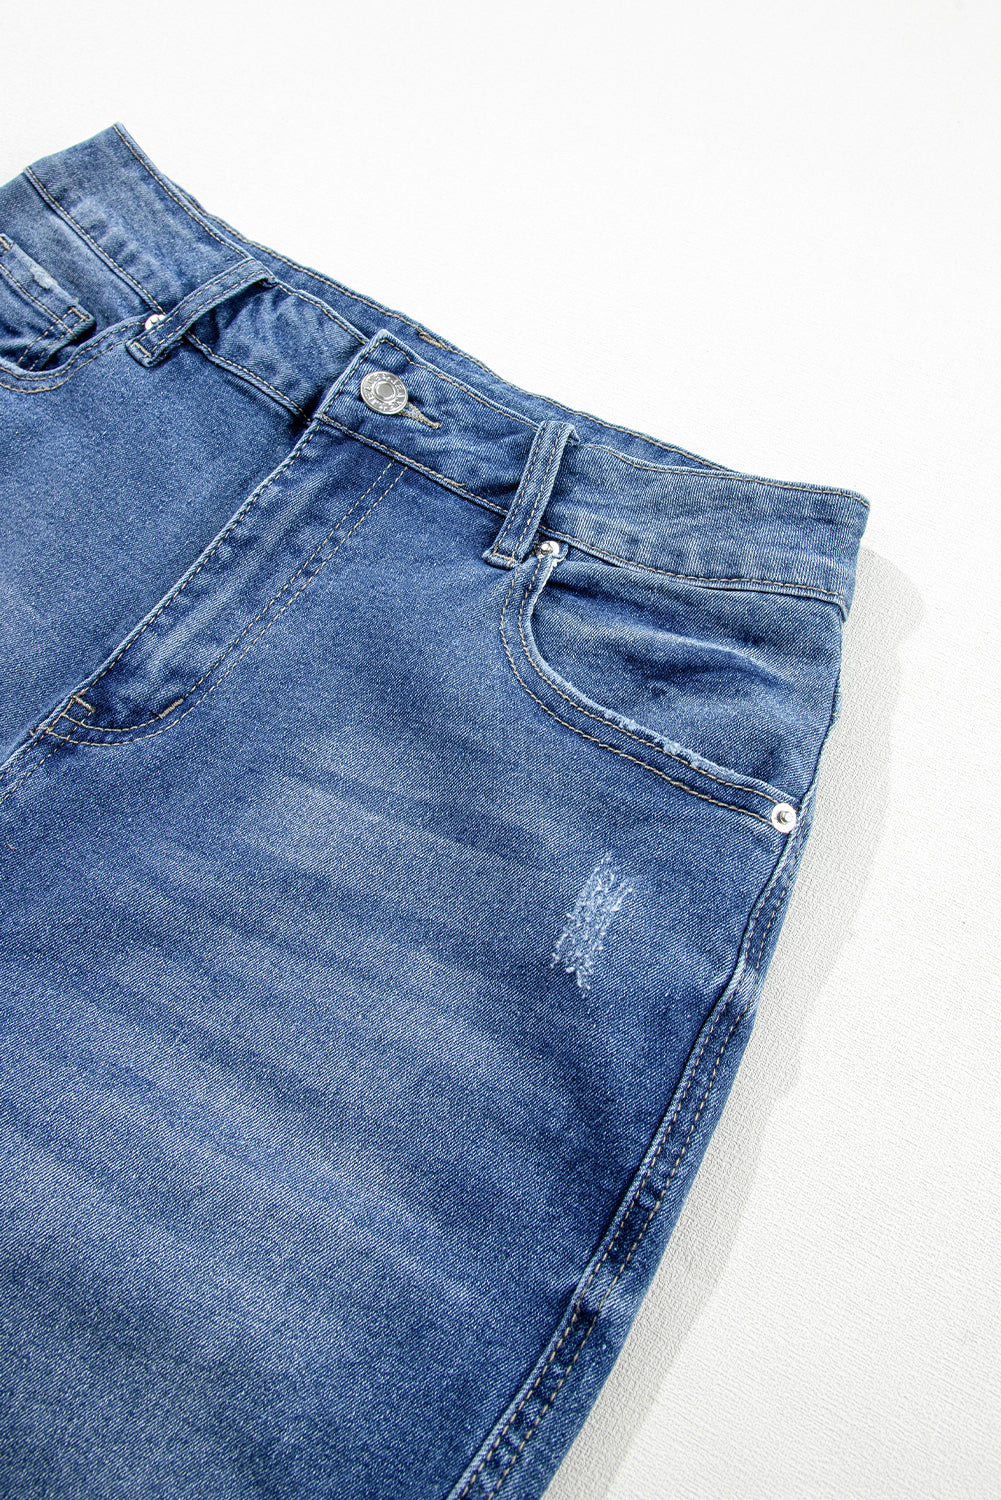 Hellblaue, ausgefranste Skinny-Jeans im Used-Look